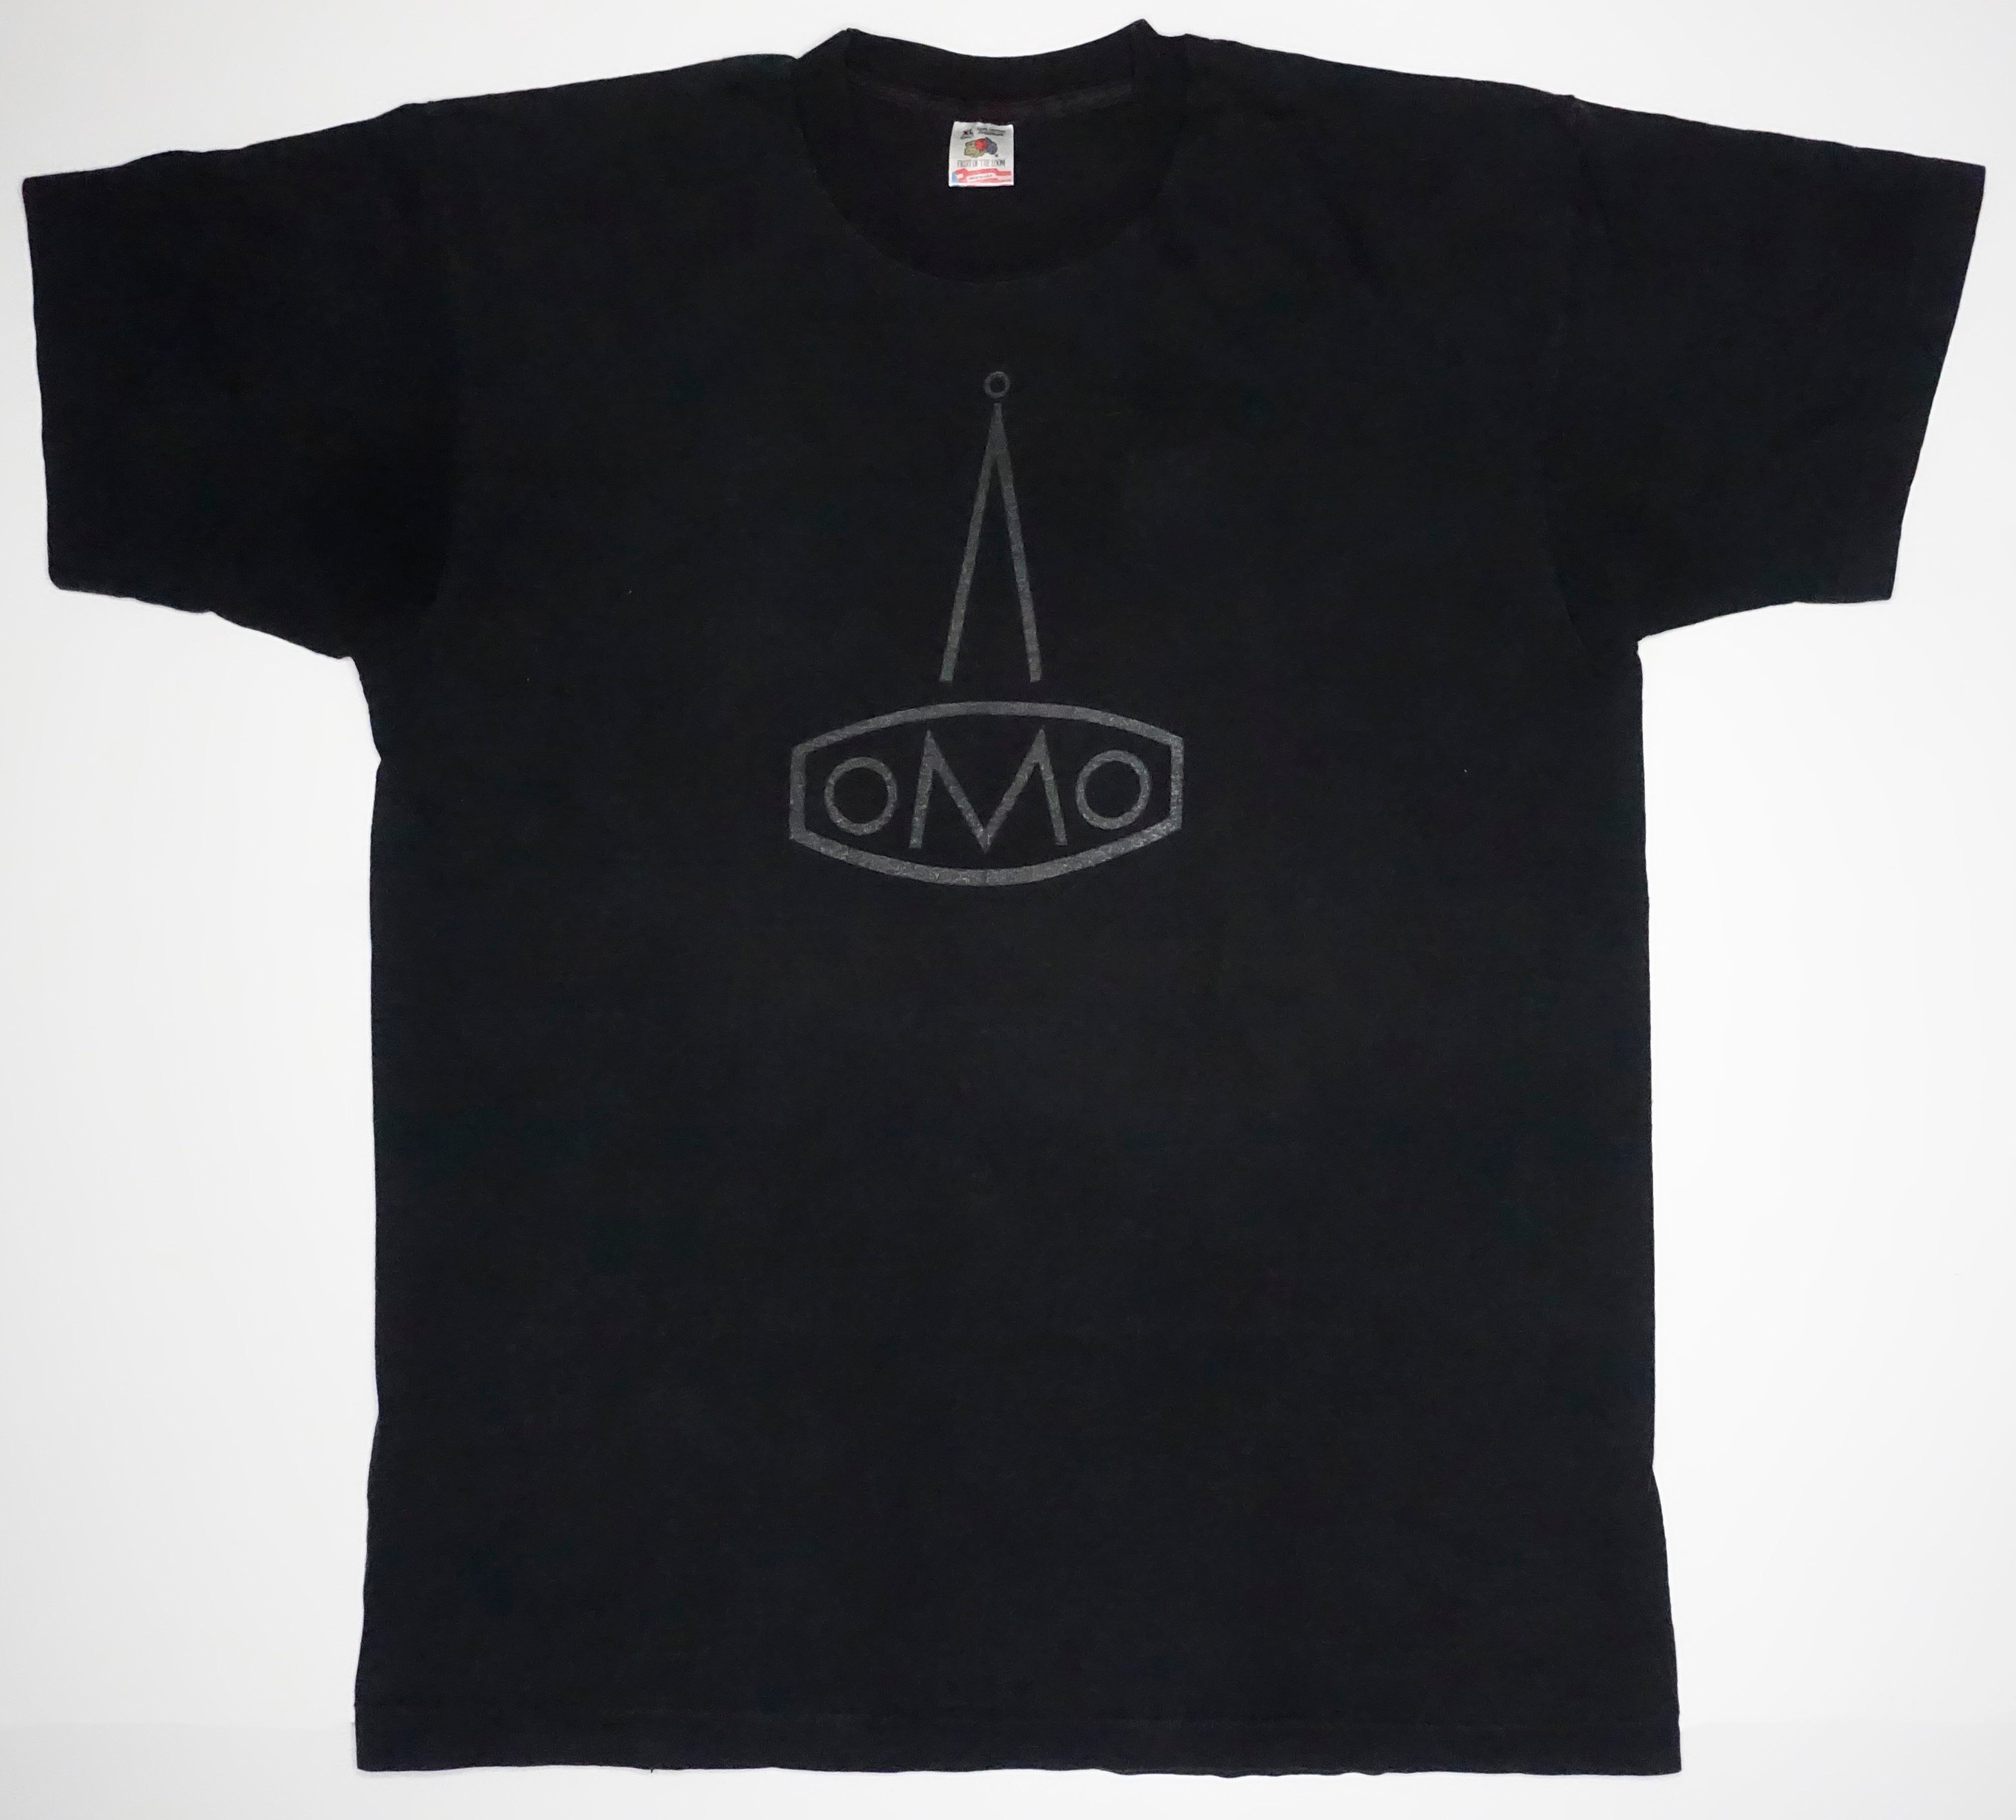 Shellac - oMo Tour Shirt Size XL